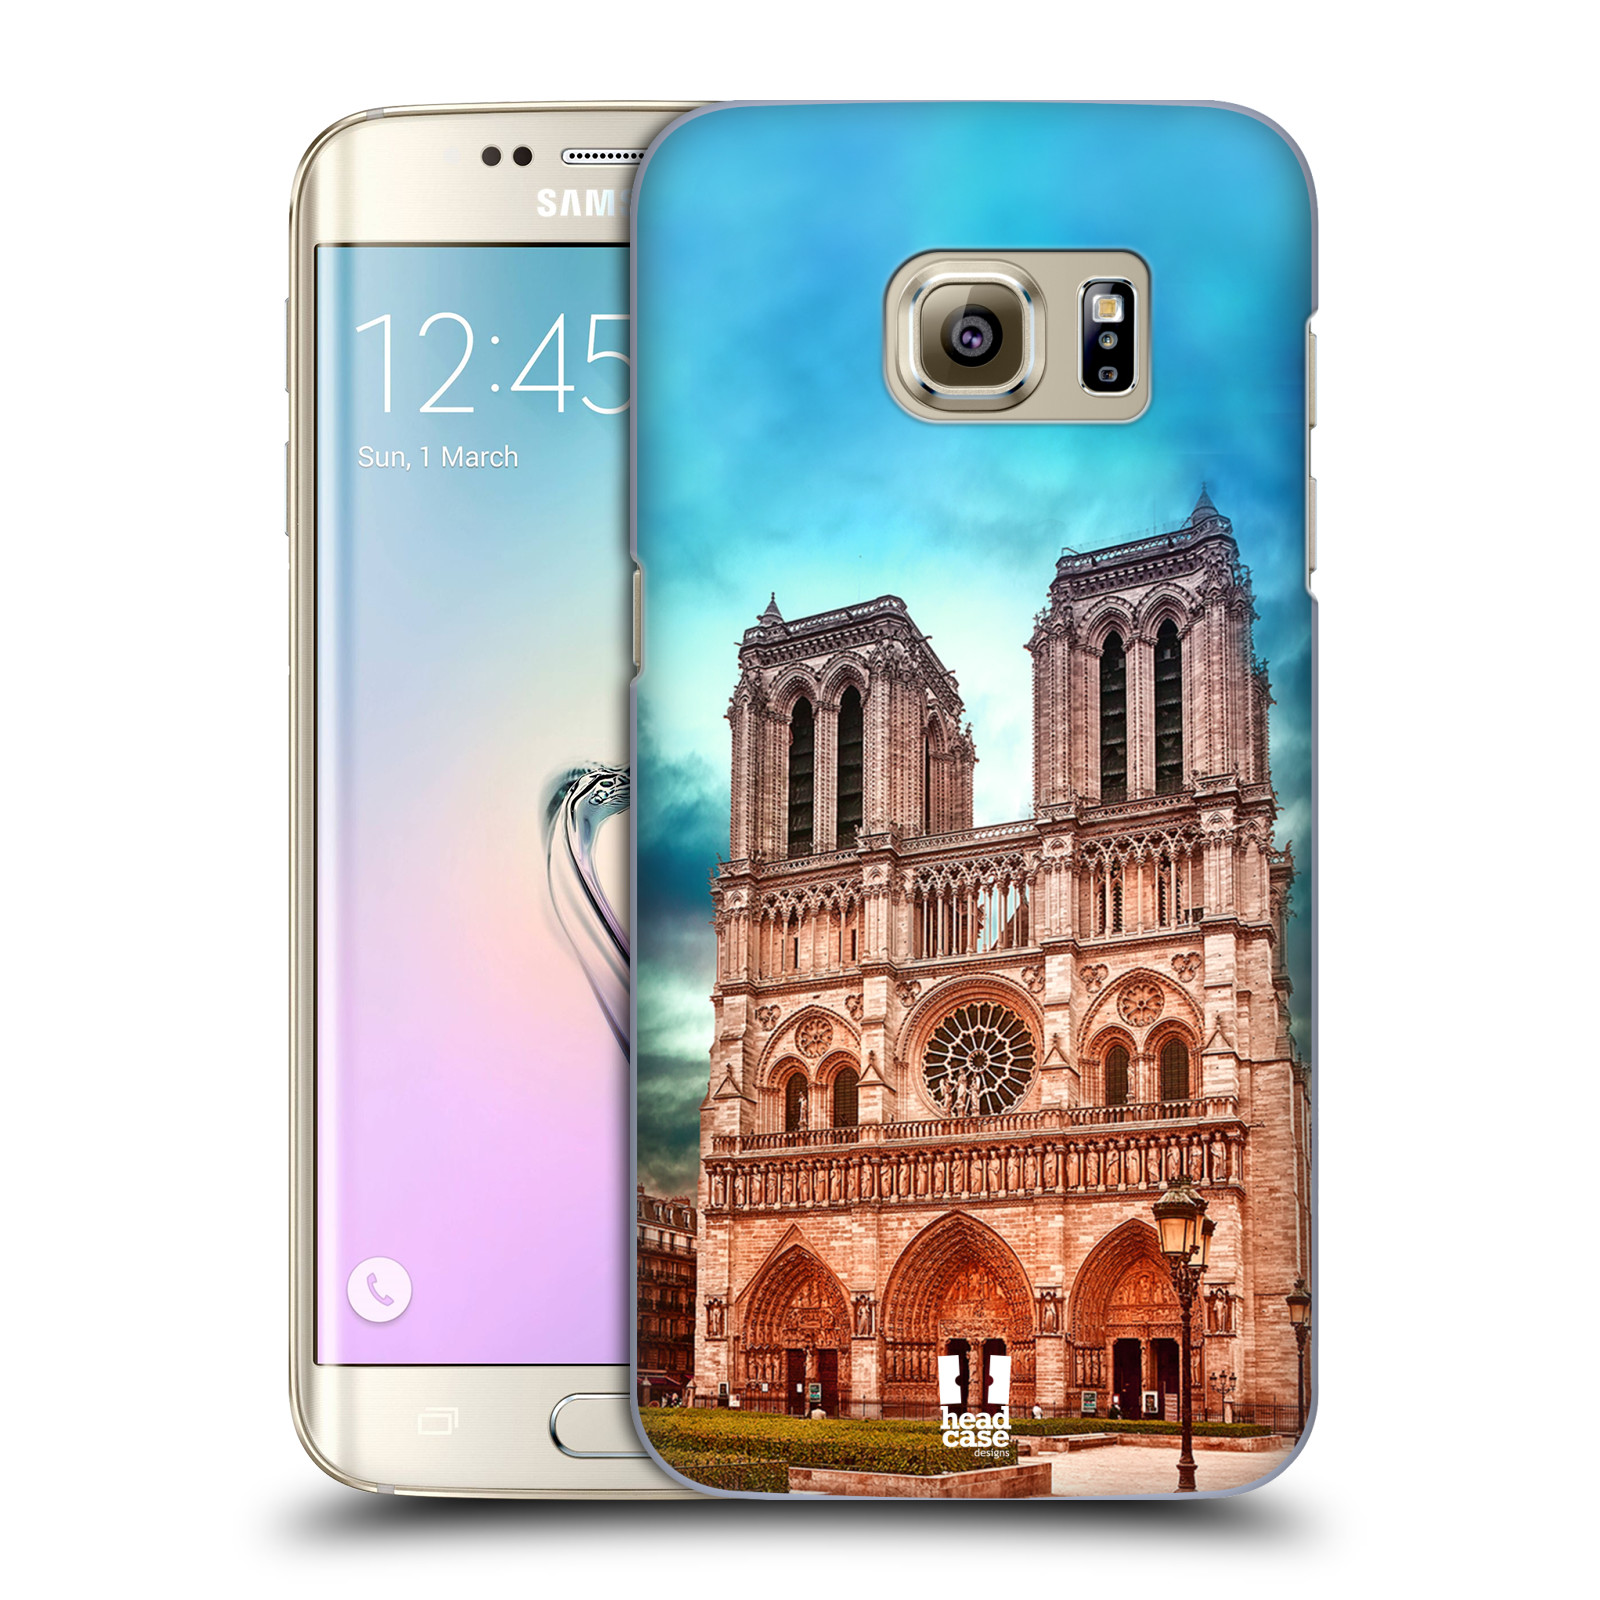 Pouzdro na mobil Samsung Galaxy S7 EDGE - HEAD CASE - historická místa katedrála Notre Dame